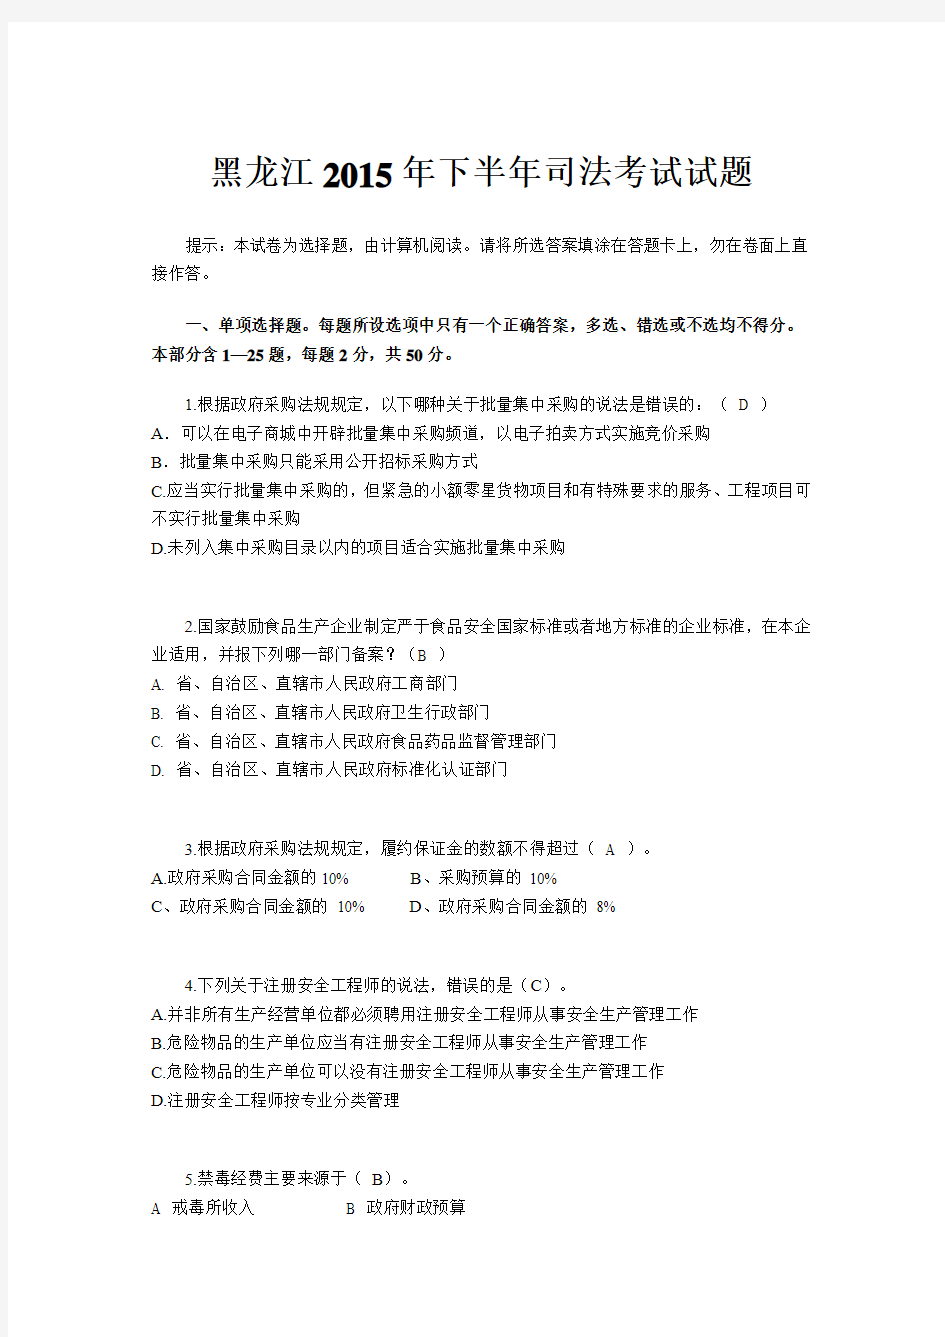 黑龙江2015年下半年司法考试试题